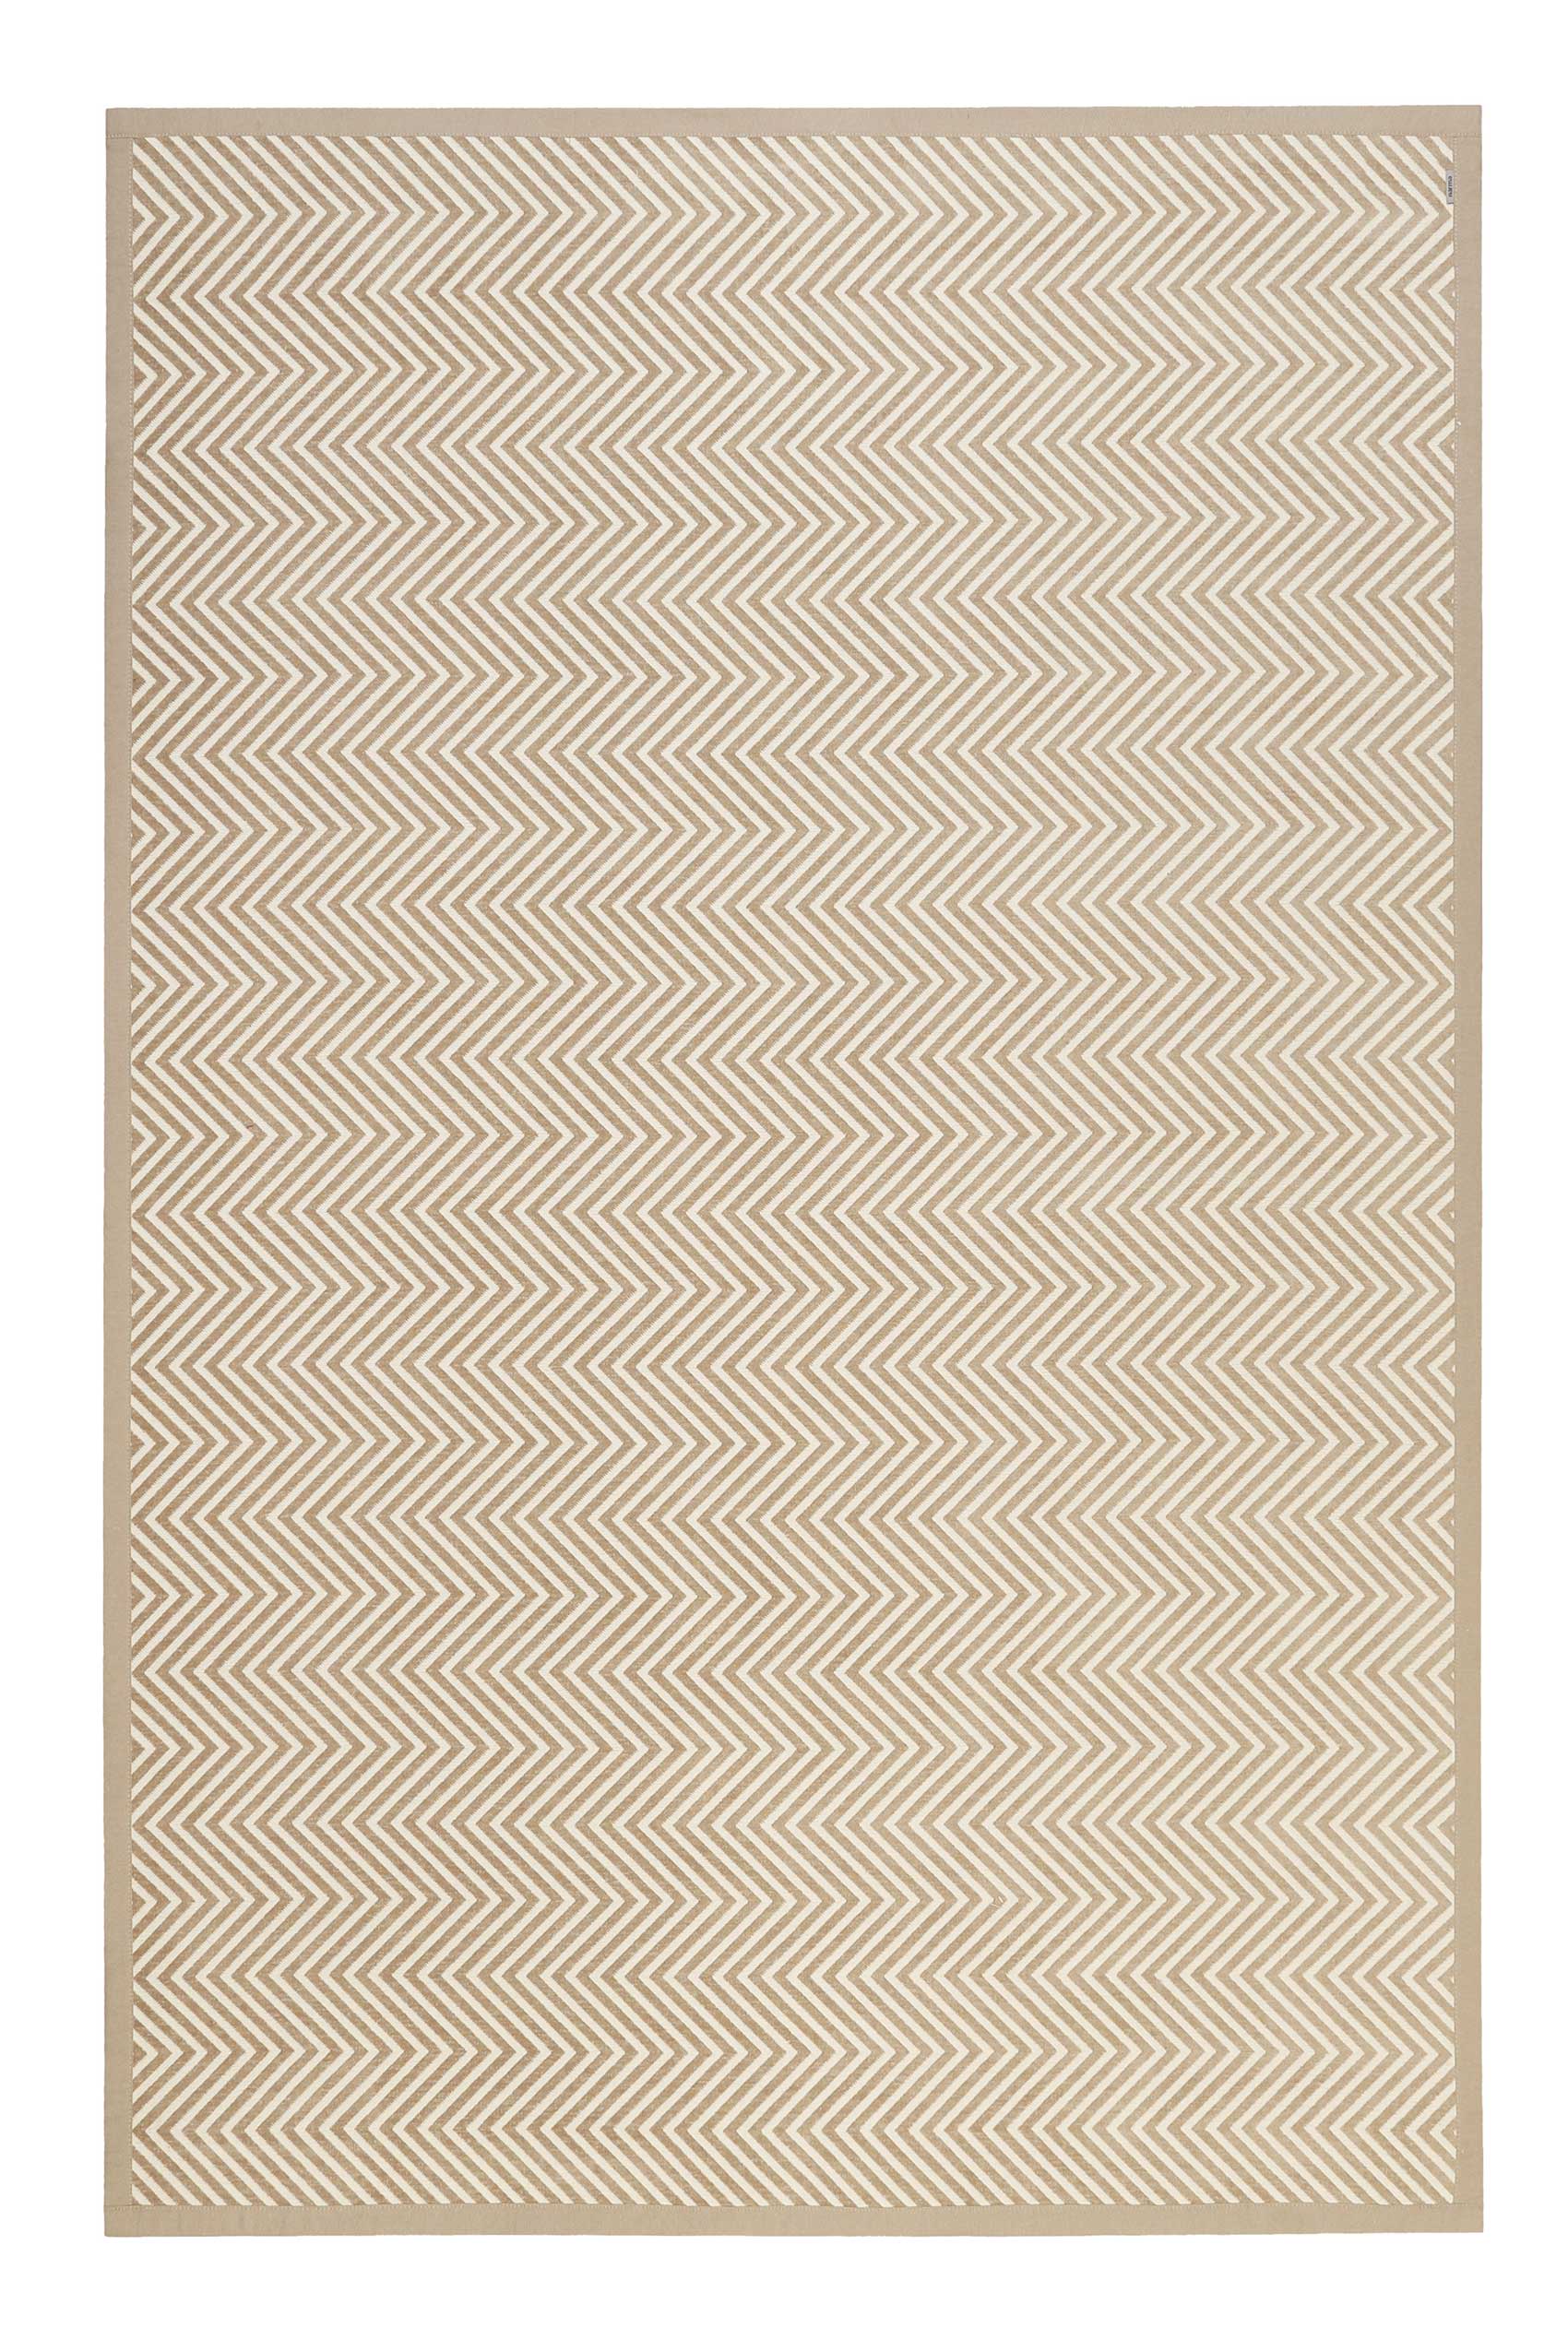 Tapis plat en coton polyester réversible 160x230